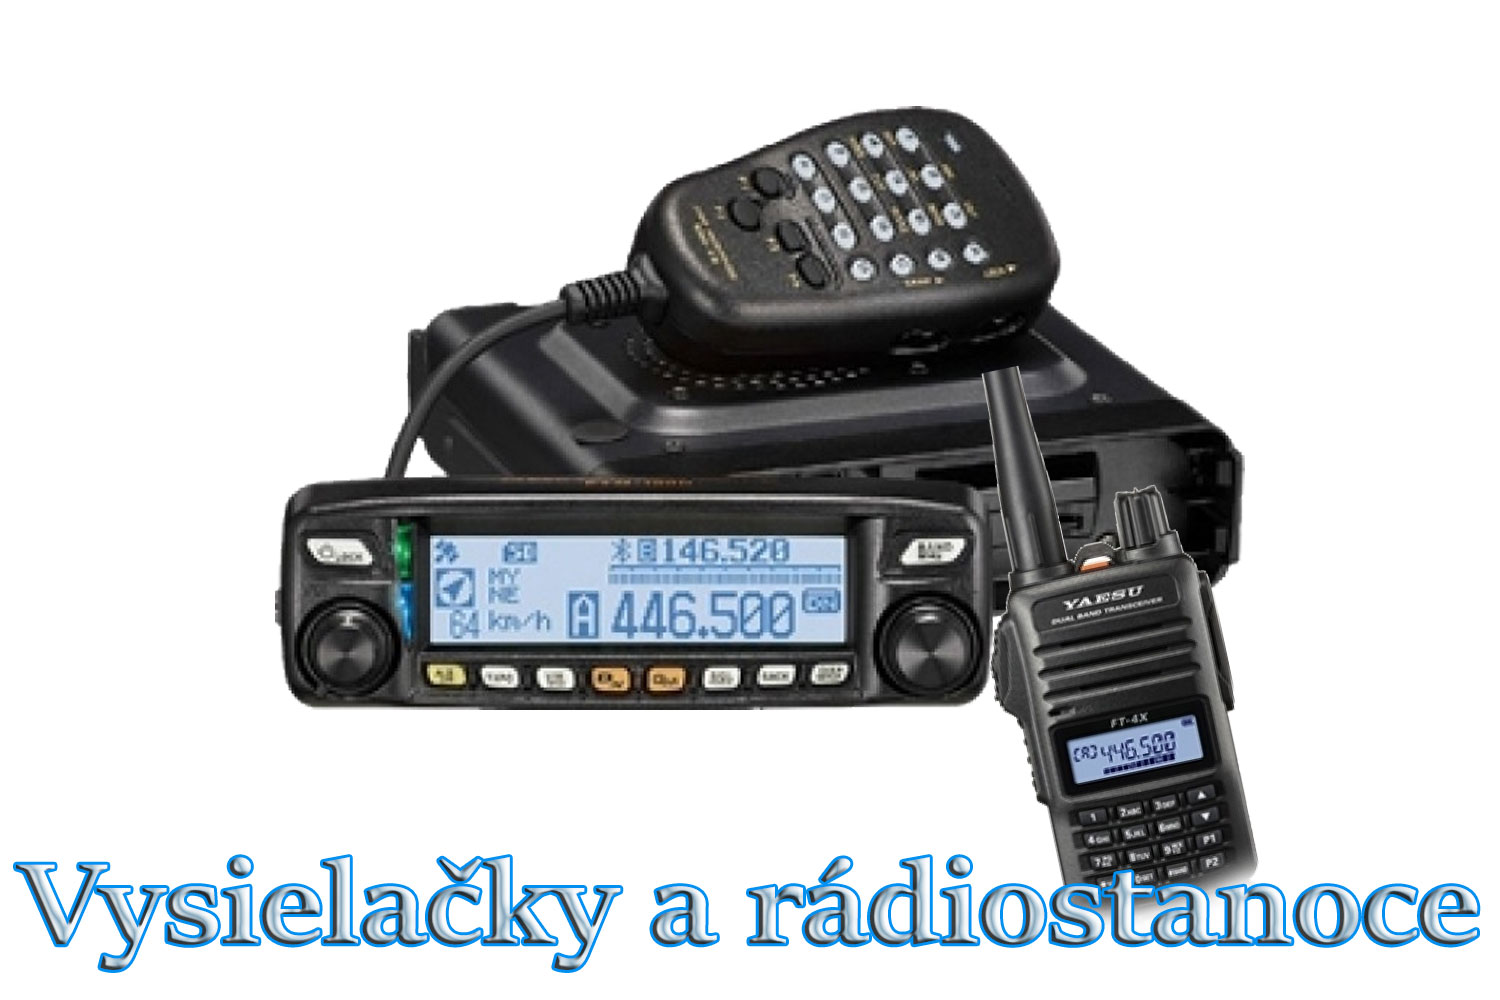 vysielačky a radiostanice